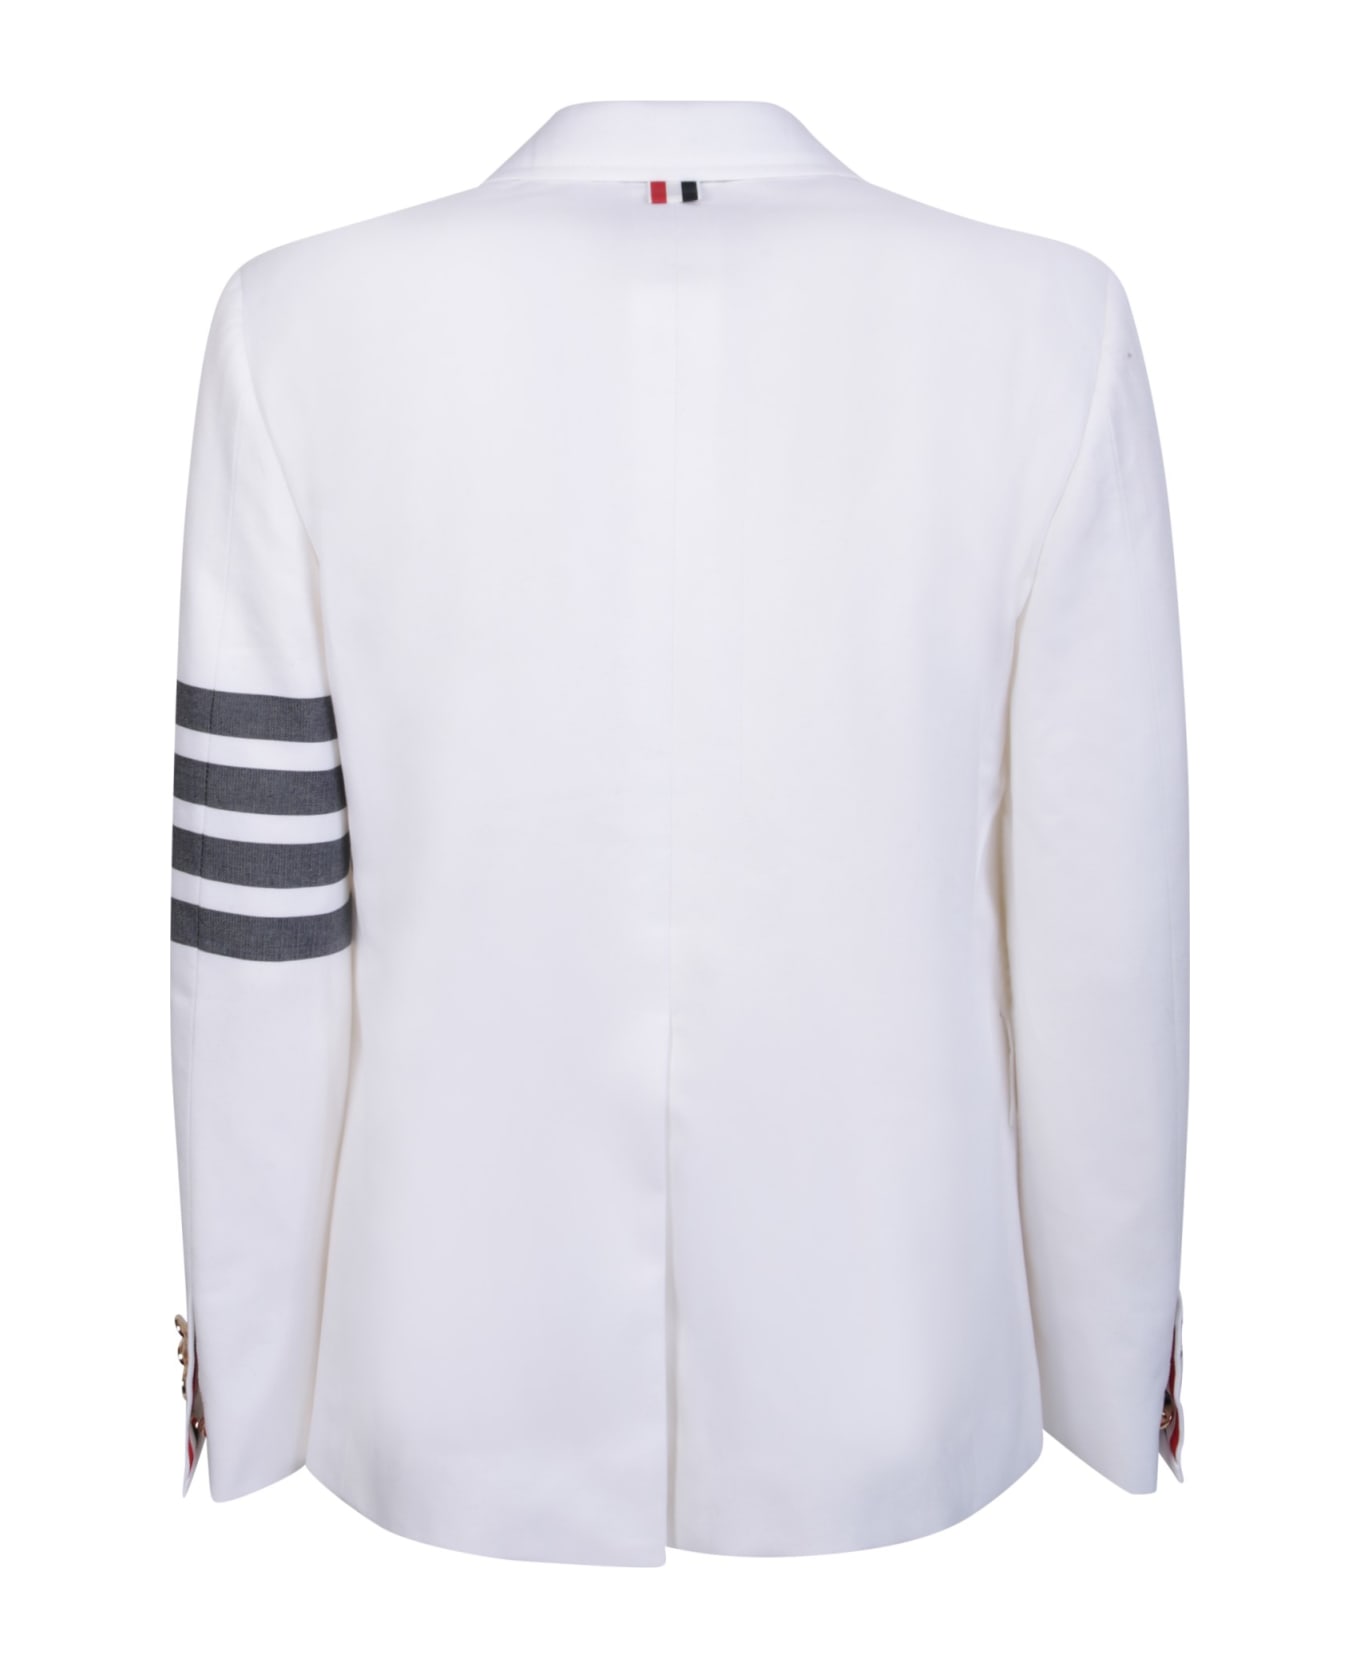 Thom Browne White Giacca Dp 4 Bar Bia Gri Jacket - White